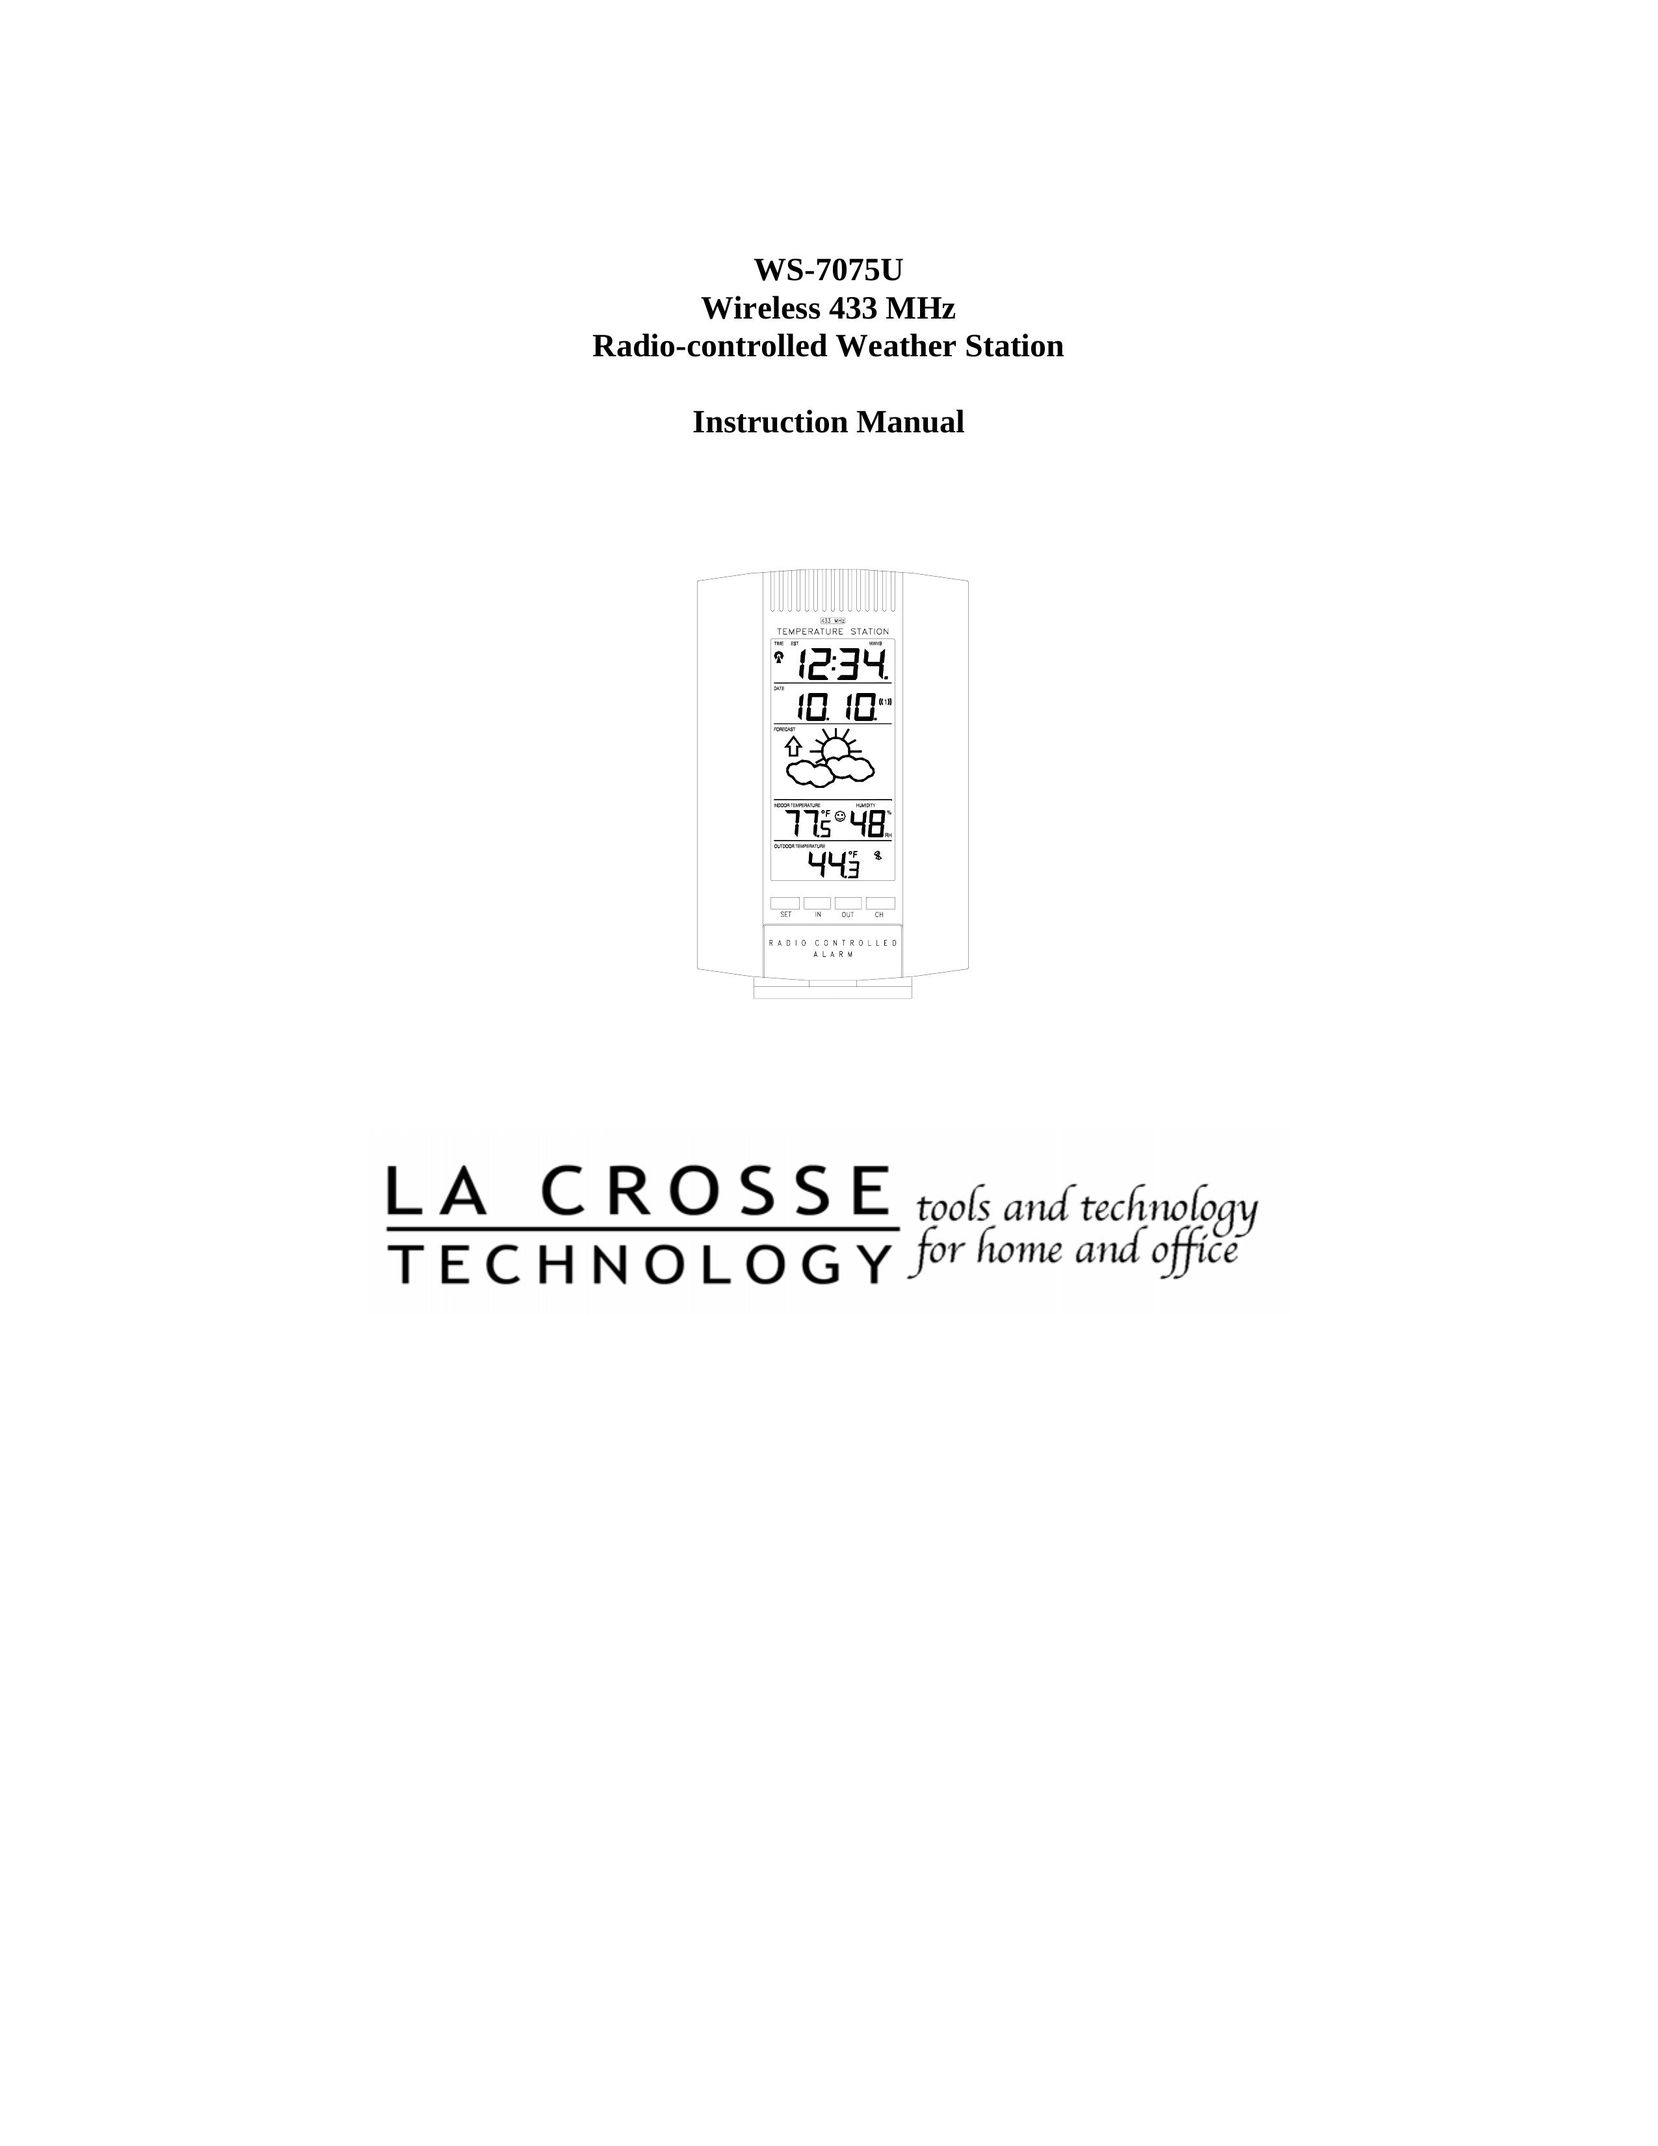 La Crosse Technology WS-7075U Clock User Manual